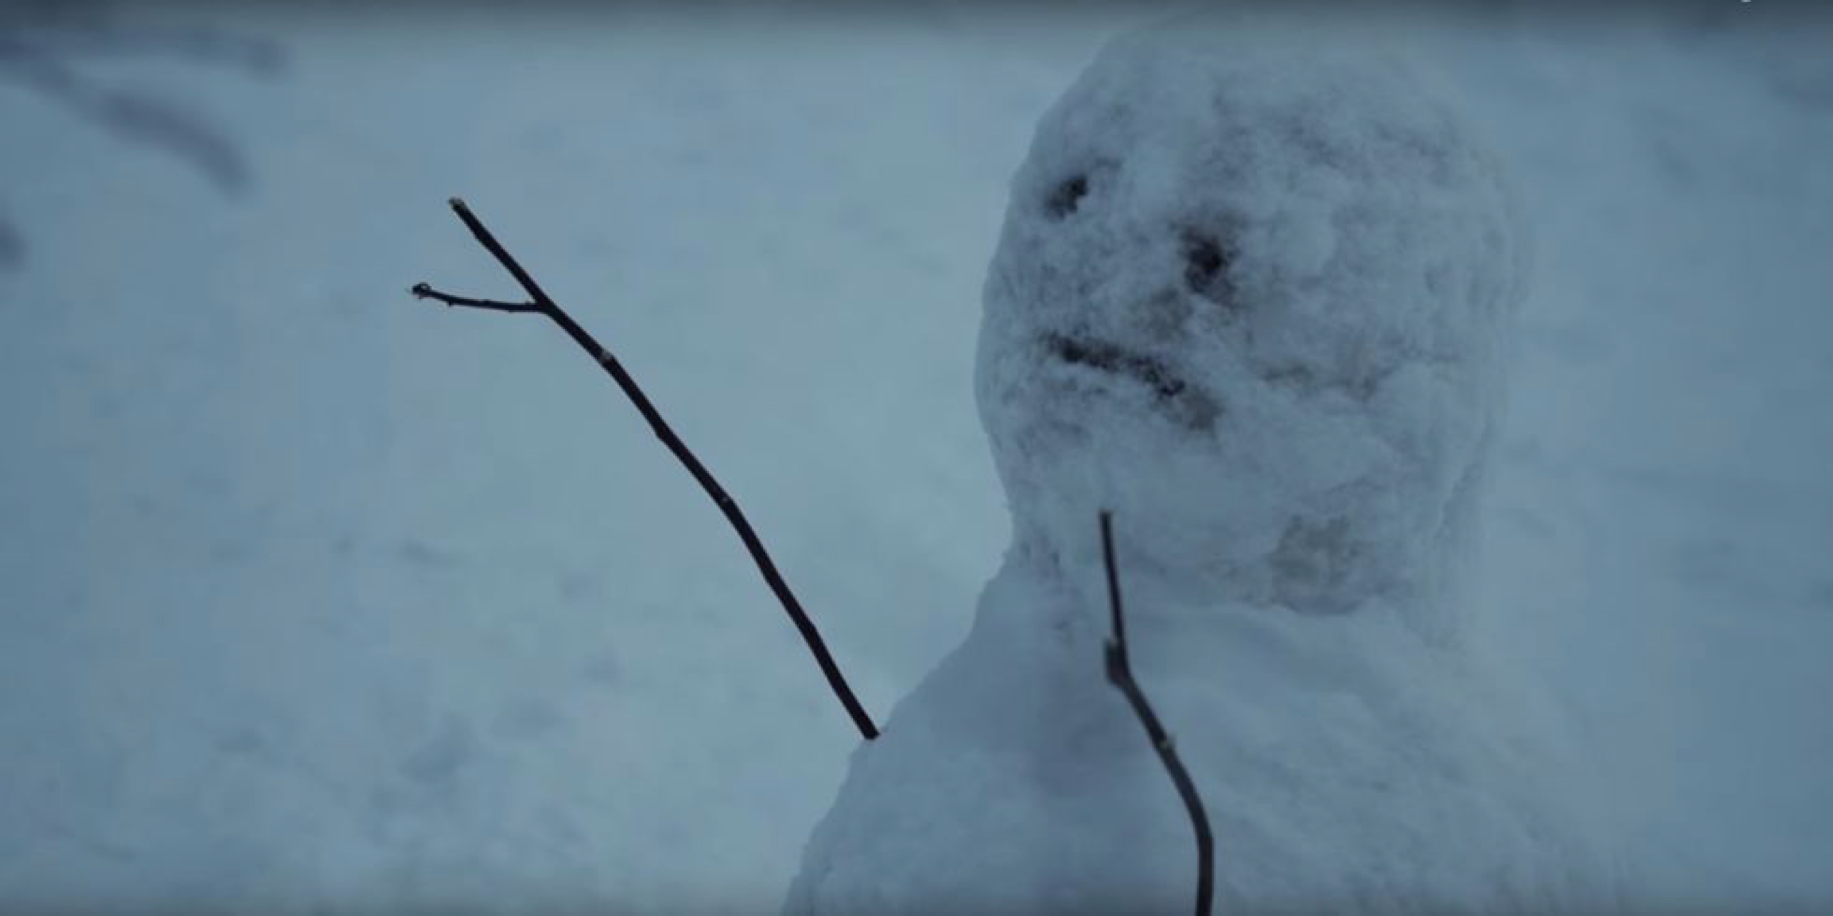 The Snowman snowman